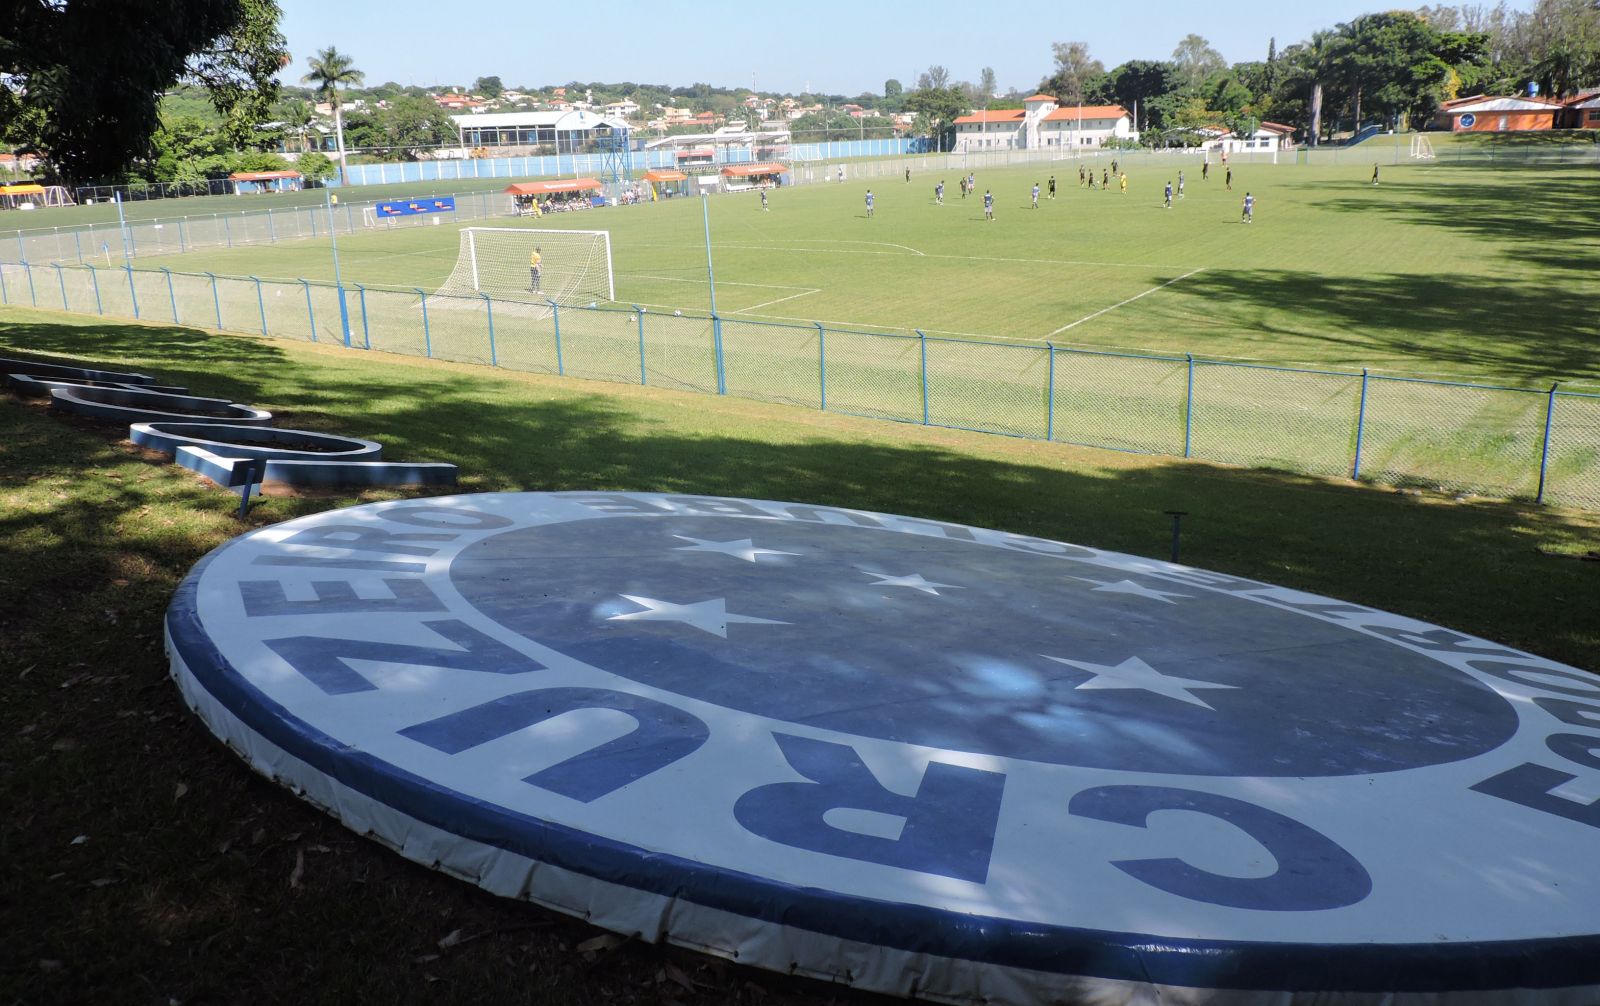 Cruzeiro faz primeiro jogo oficial na Toca 2; avaliação é positiva, e clube  prevê mudanças na estrutura, cruzeiro